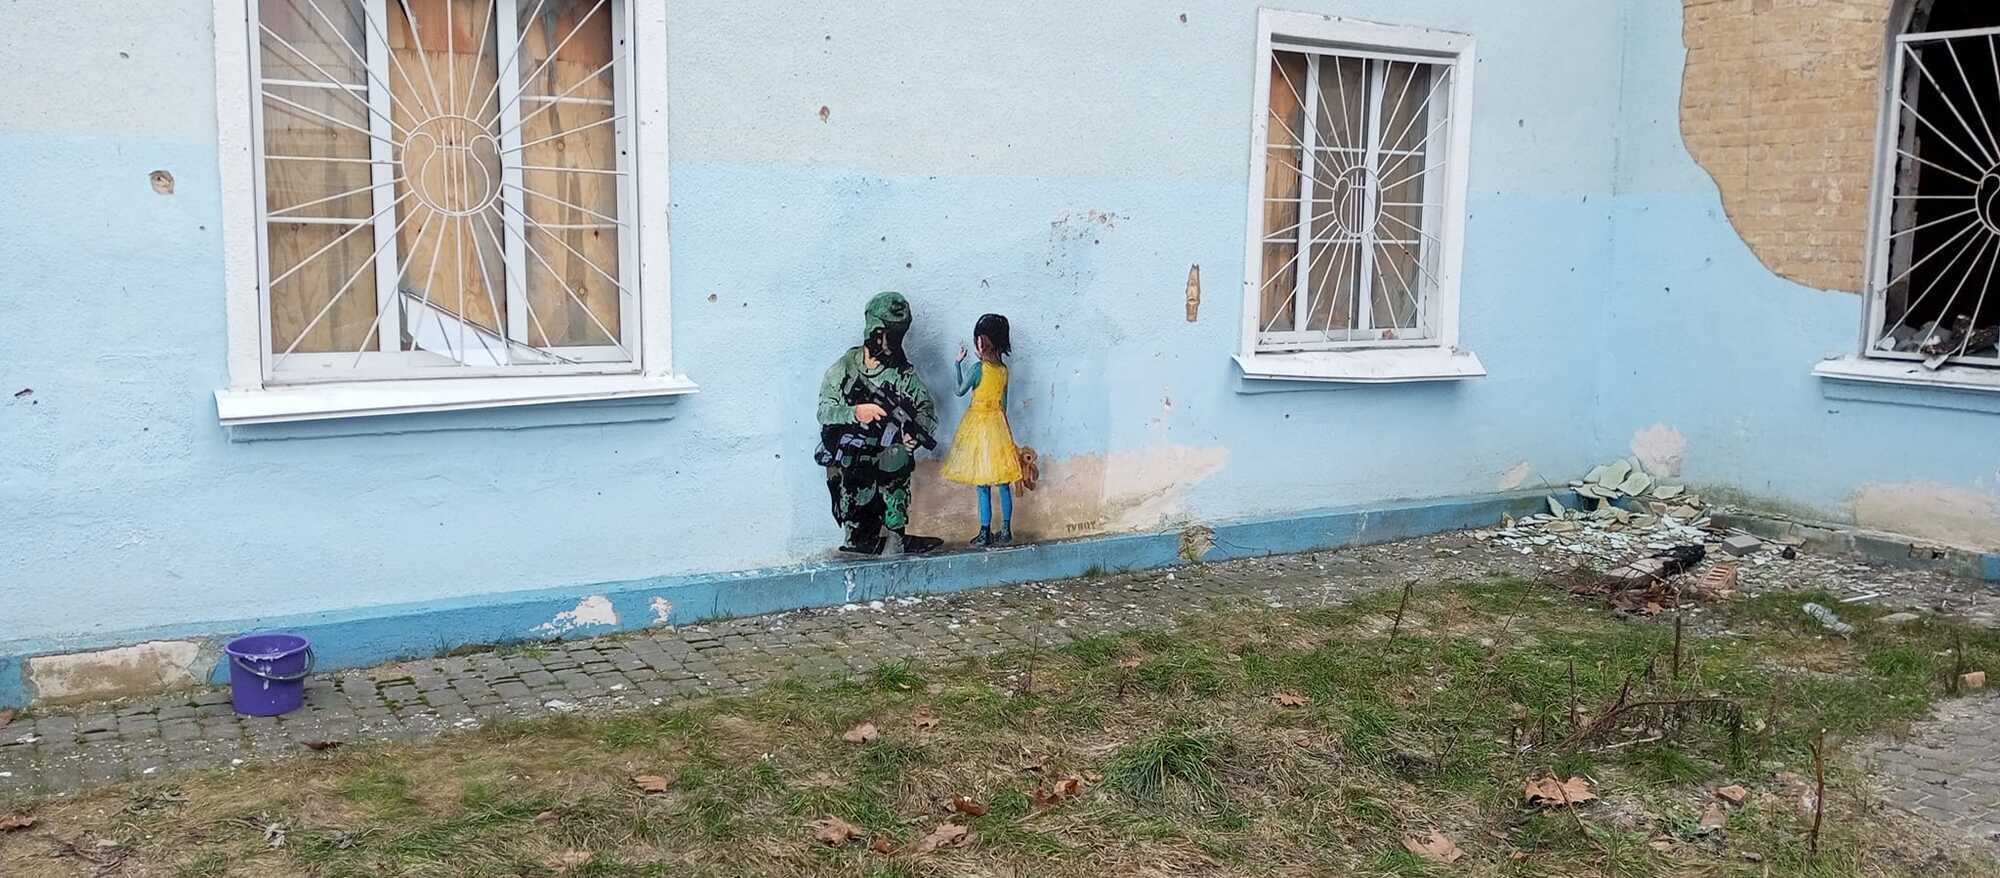 В Буче и Ирпене появились граффити художника из Италии, который рисовал Путина за решеткой